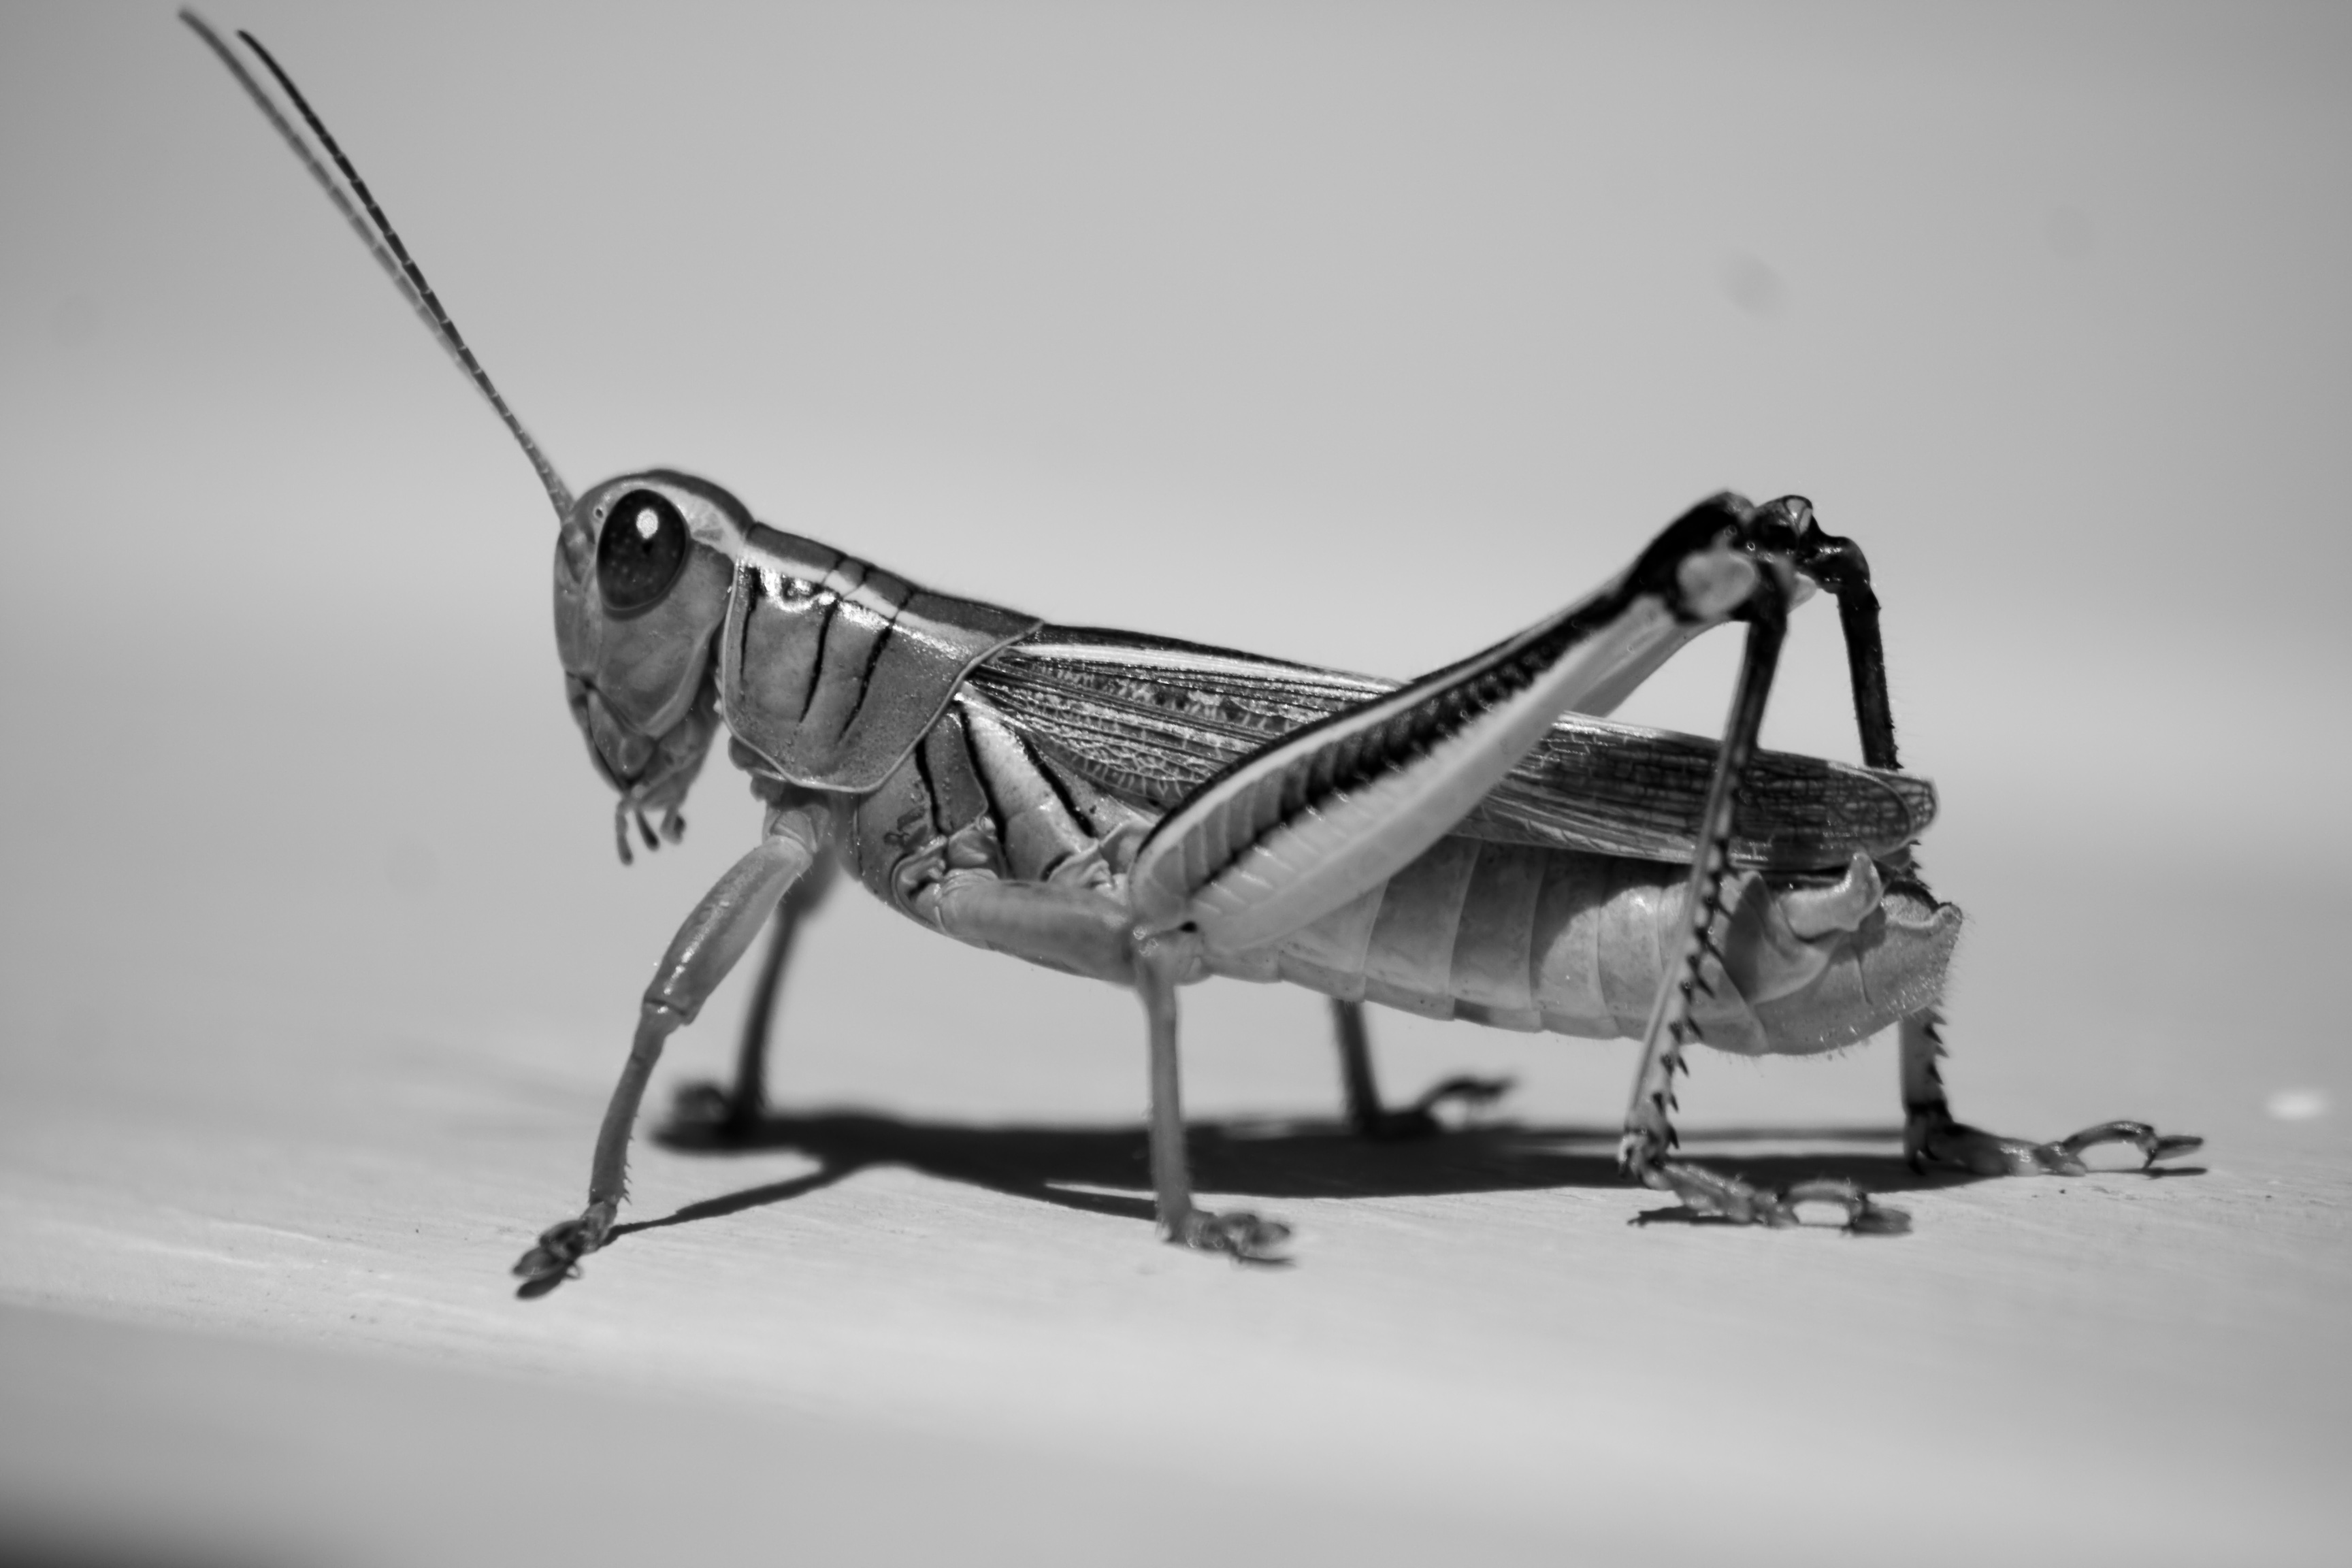 Grasshopper, Action, Air, Antenna, Blackandwhite, HQ Photo